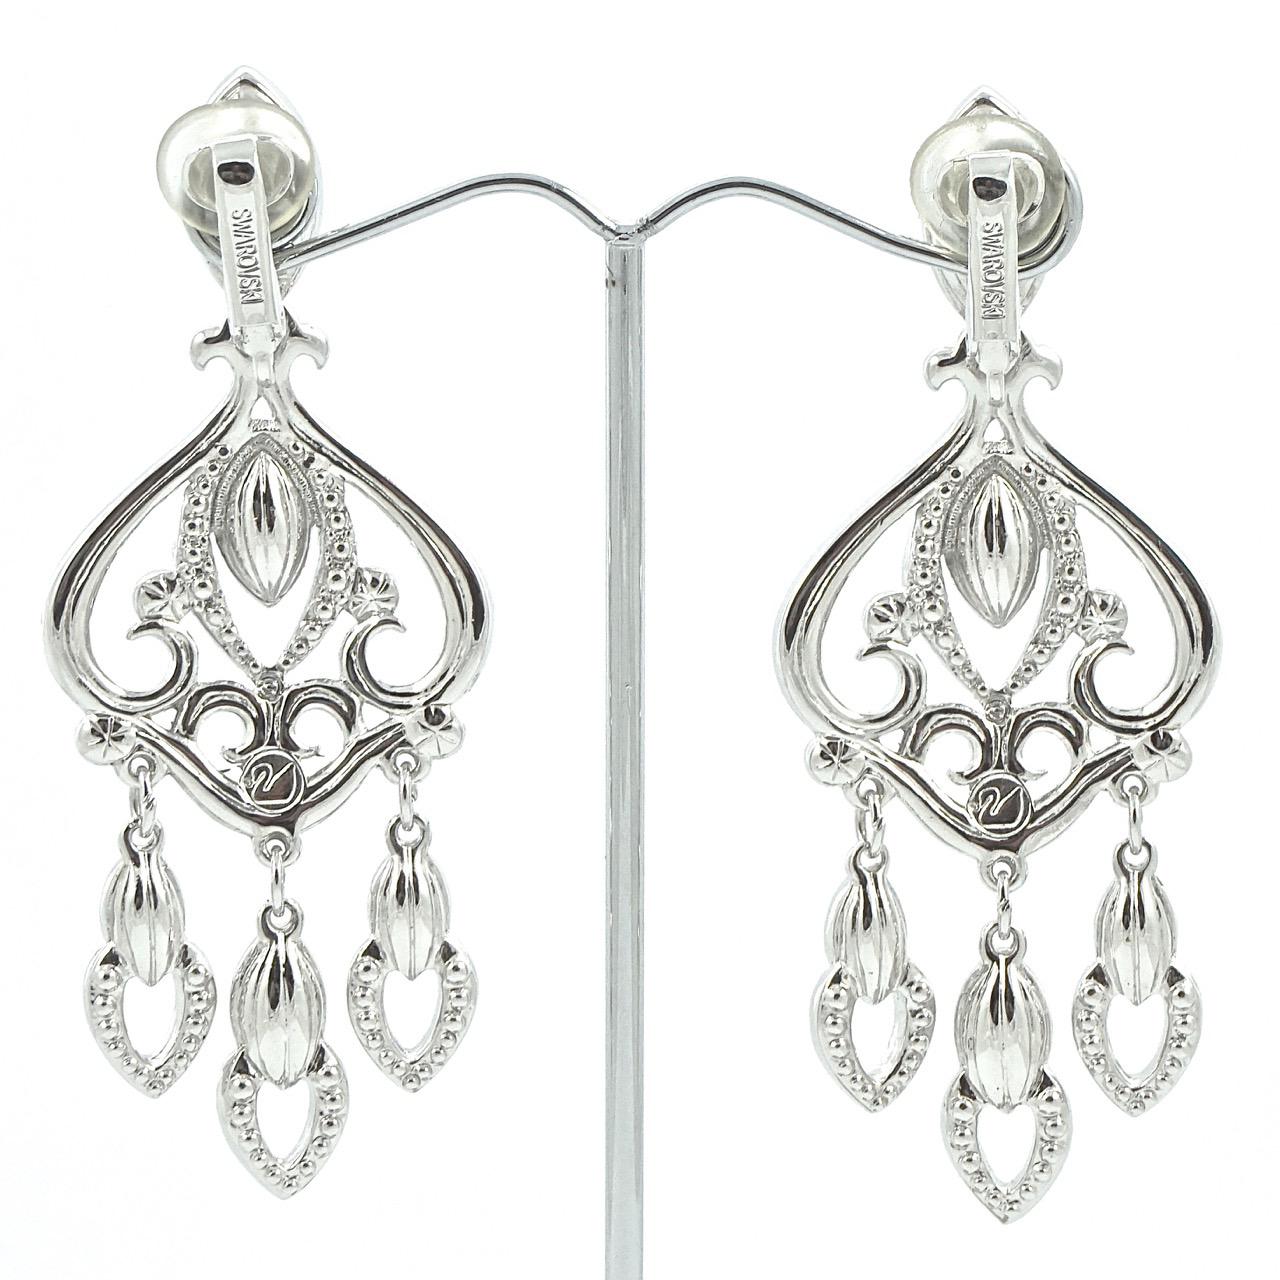 
Swarovski Ohrringe in Silber mit klaren facettierten Marquise und runden Kristallen. Die Ohrringe sind mit dem Swarovski Schwan-Logo versehen. Länge 7,6 cm / 3 Zoll und Breite 2,9 cm / 1,14 Zoll. Die Ohrringe sind in sehr gutem Zustand und werden